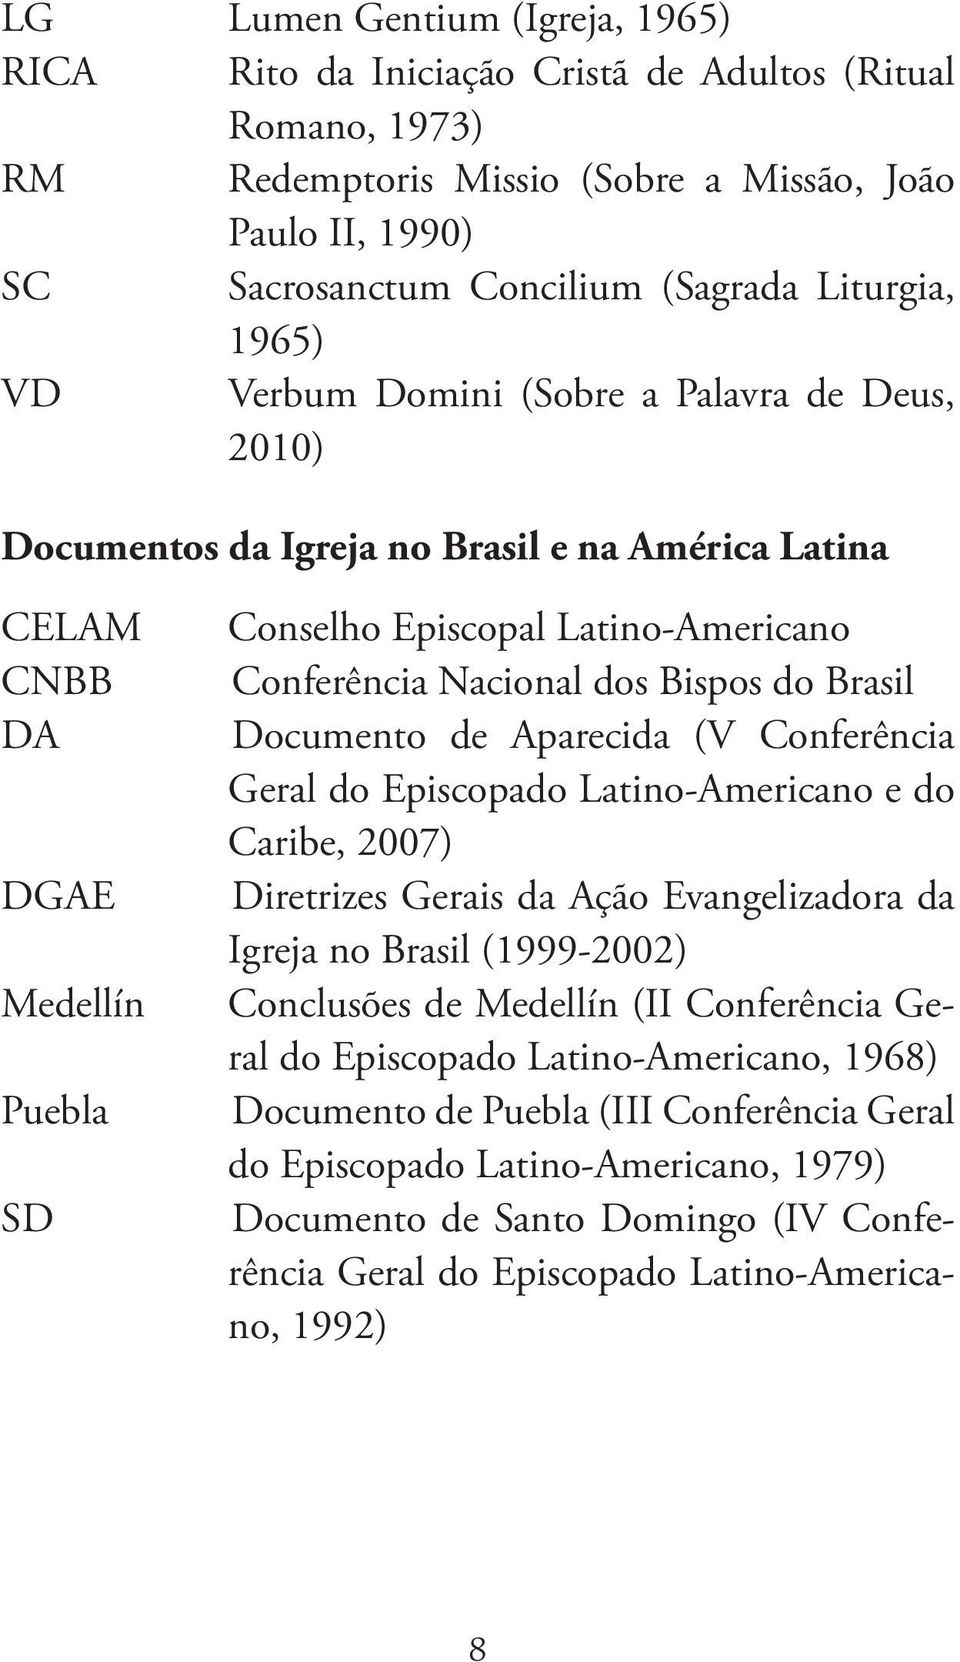 Nacional dos Bispos do Brasil Documento de Aparecida (V Conferência Geral do Episcopado Latino-Americano e do Caribe, 2007) Diretrizes Gerais da Ação Evangelizadora da Igreja no Brasil (1999-2002)